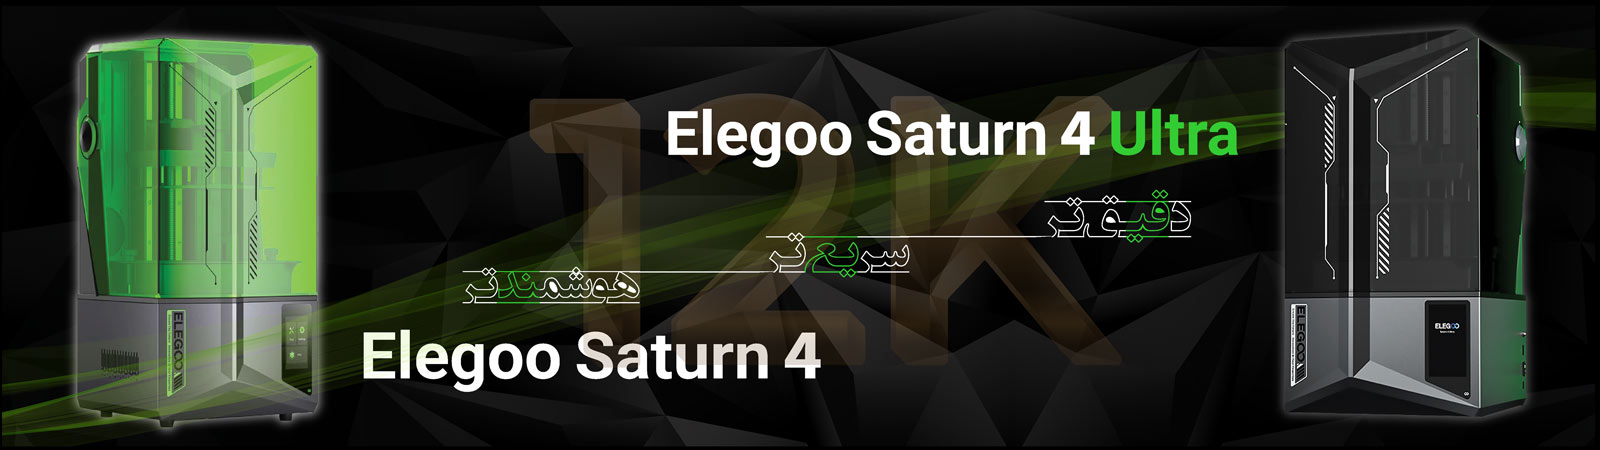 خرید پرینتر های سه بعدی Elegoo Saturn از فروشگاه 3Dier